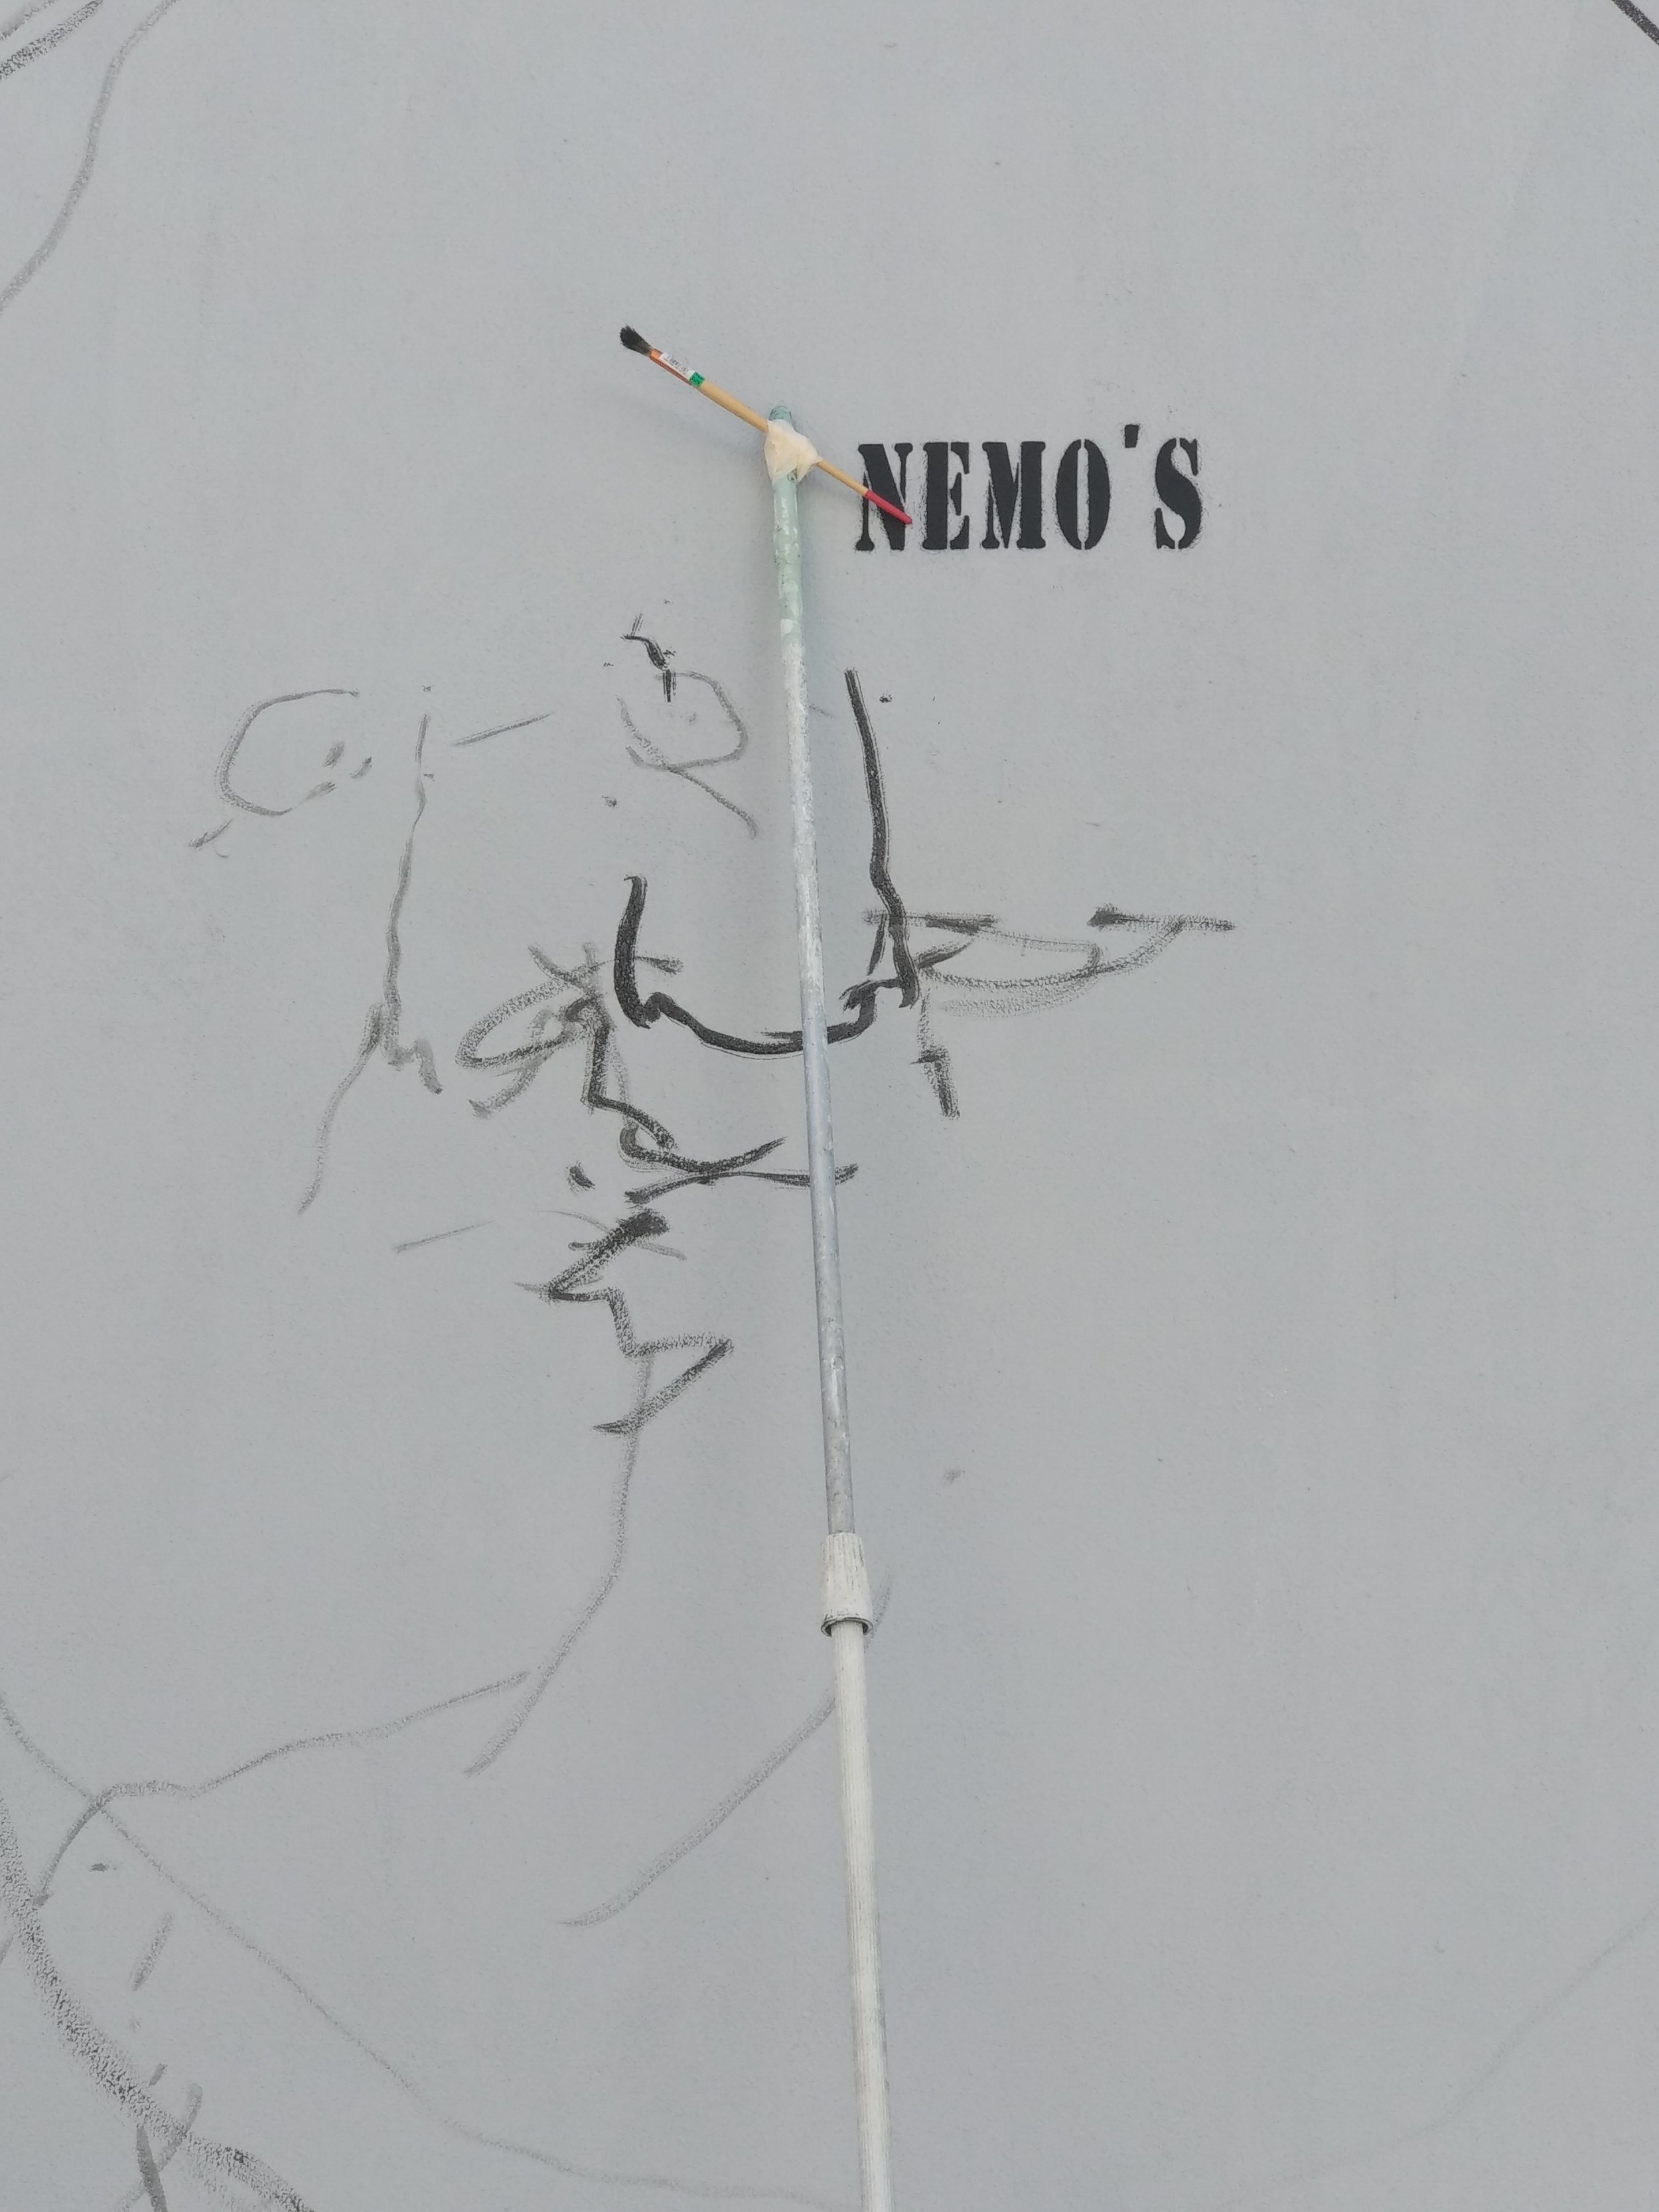 Nemos - Muros Tabacalera 2019.jpg